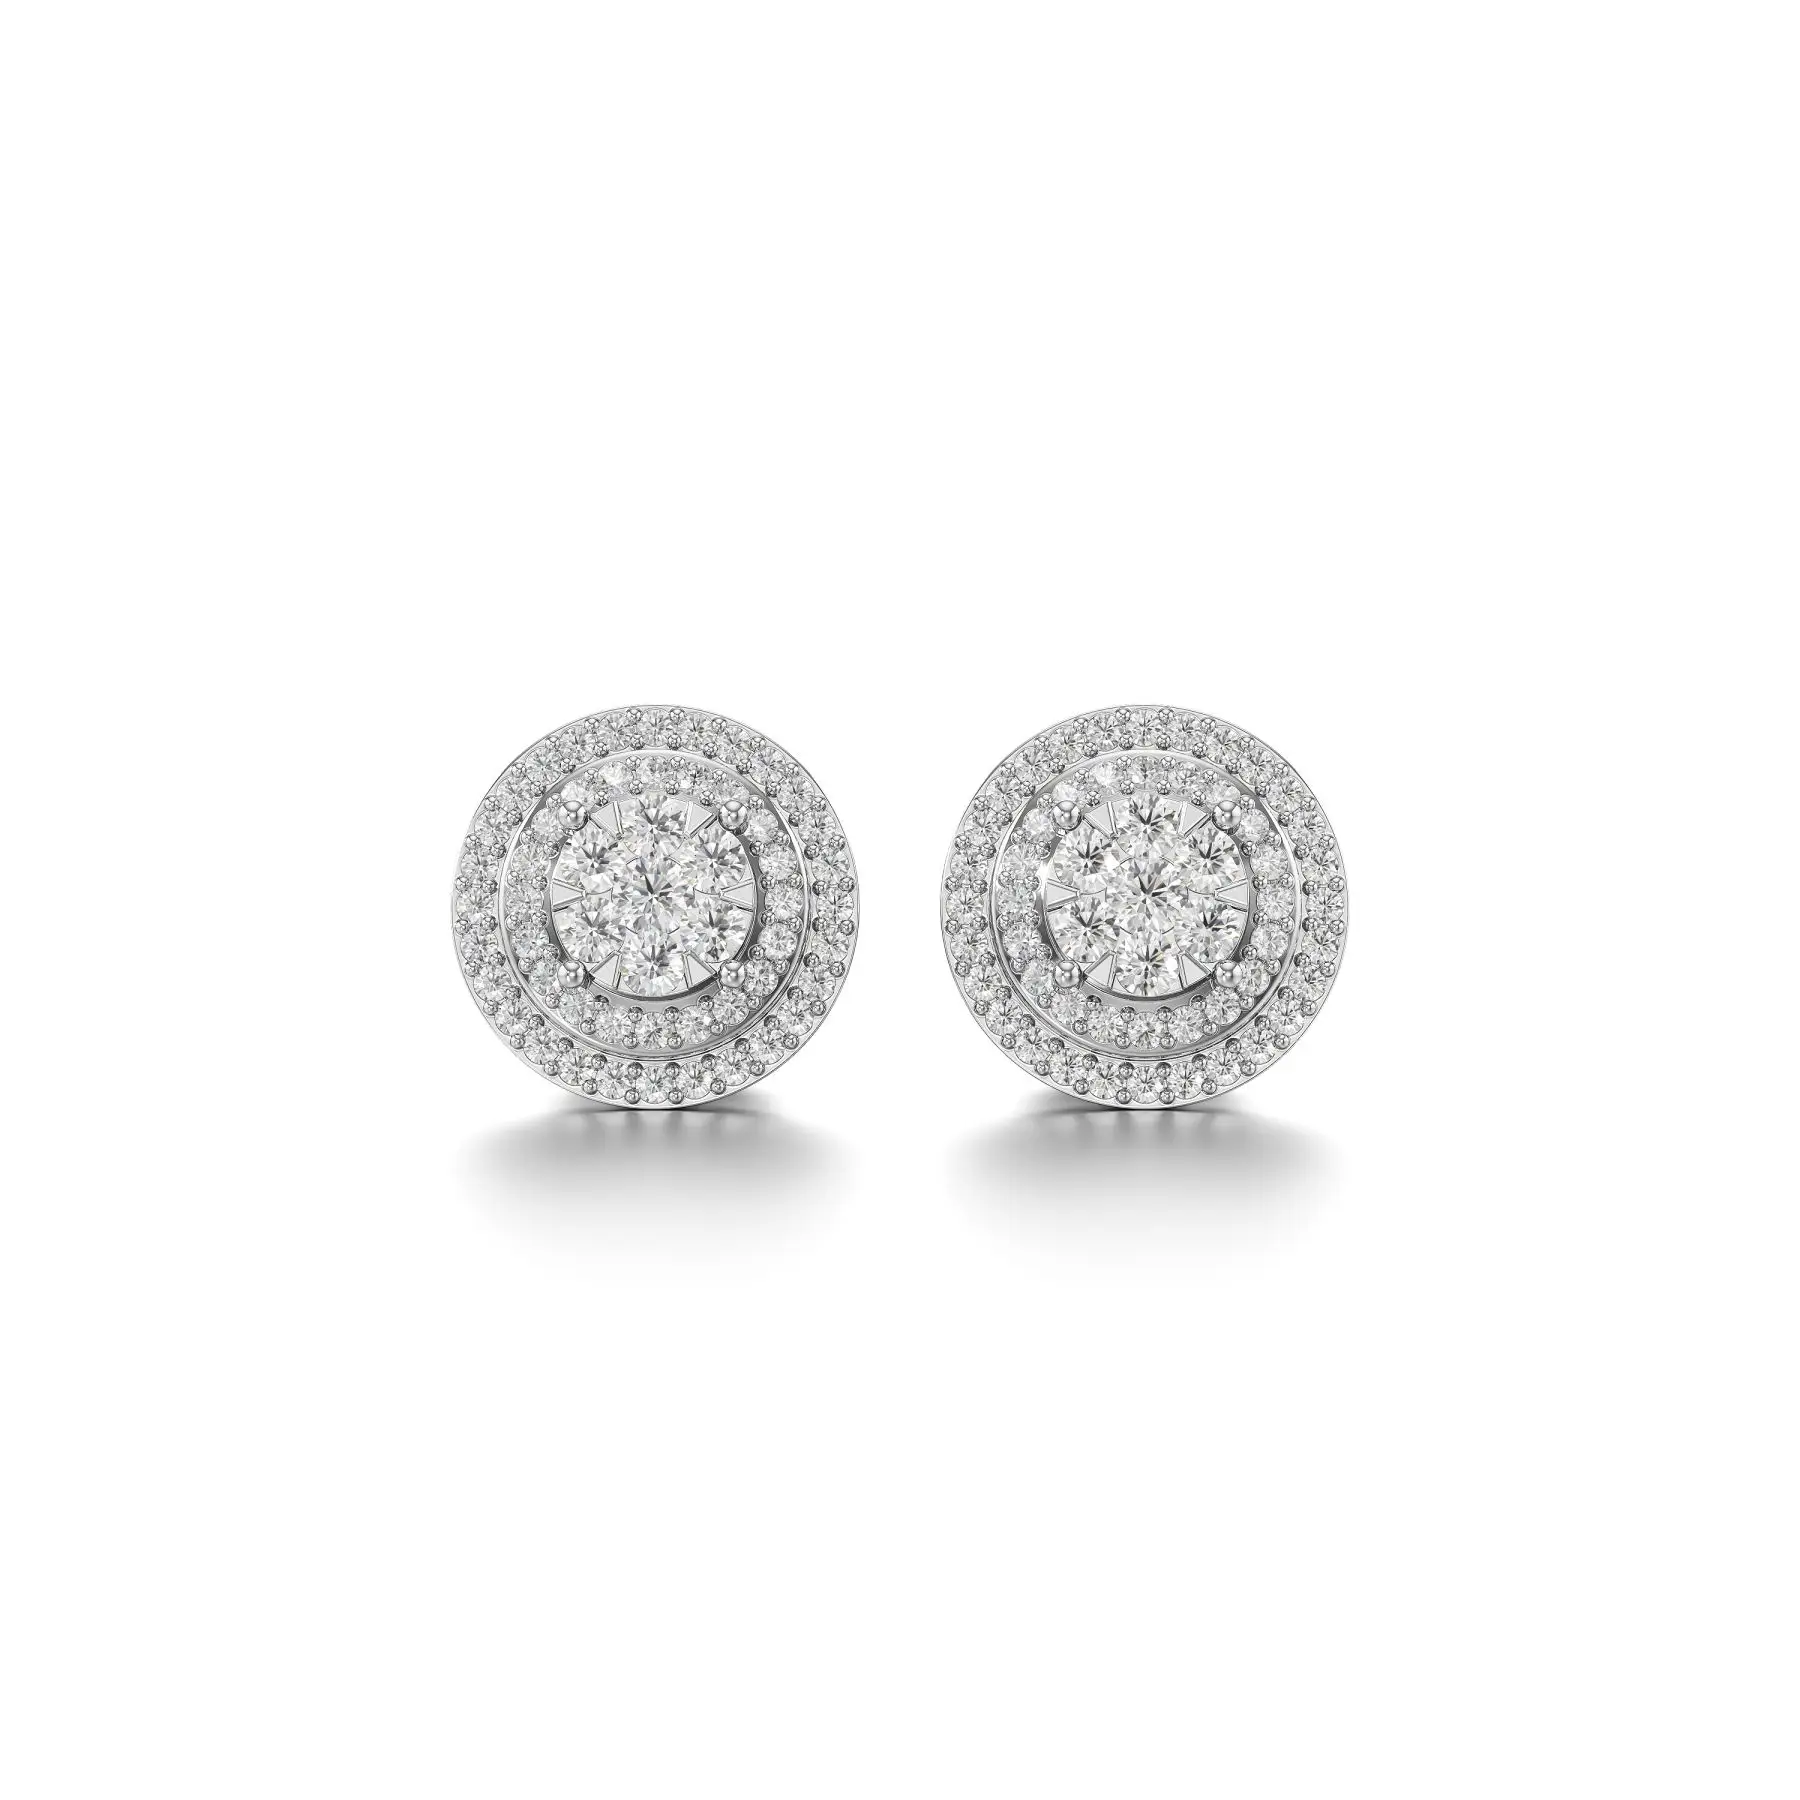 Stepped Cluster Diamond Earrings in White 10k Gold